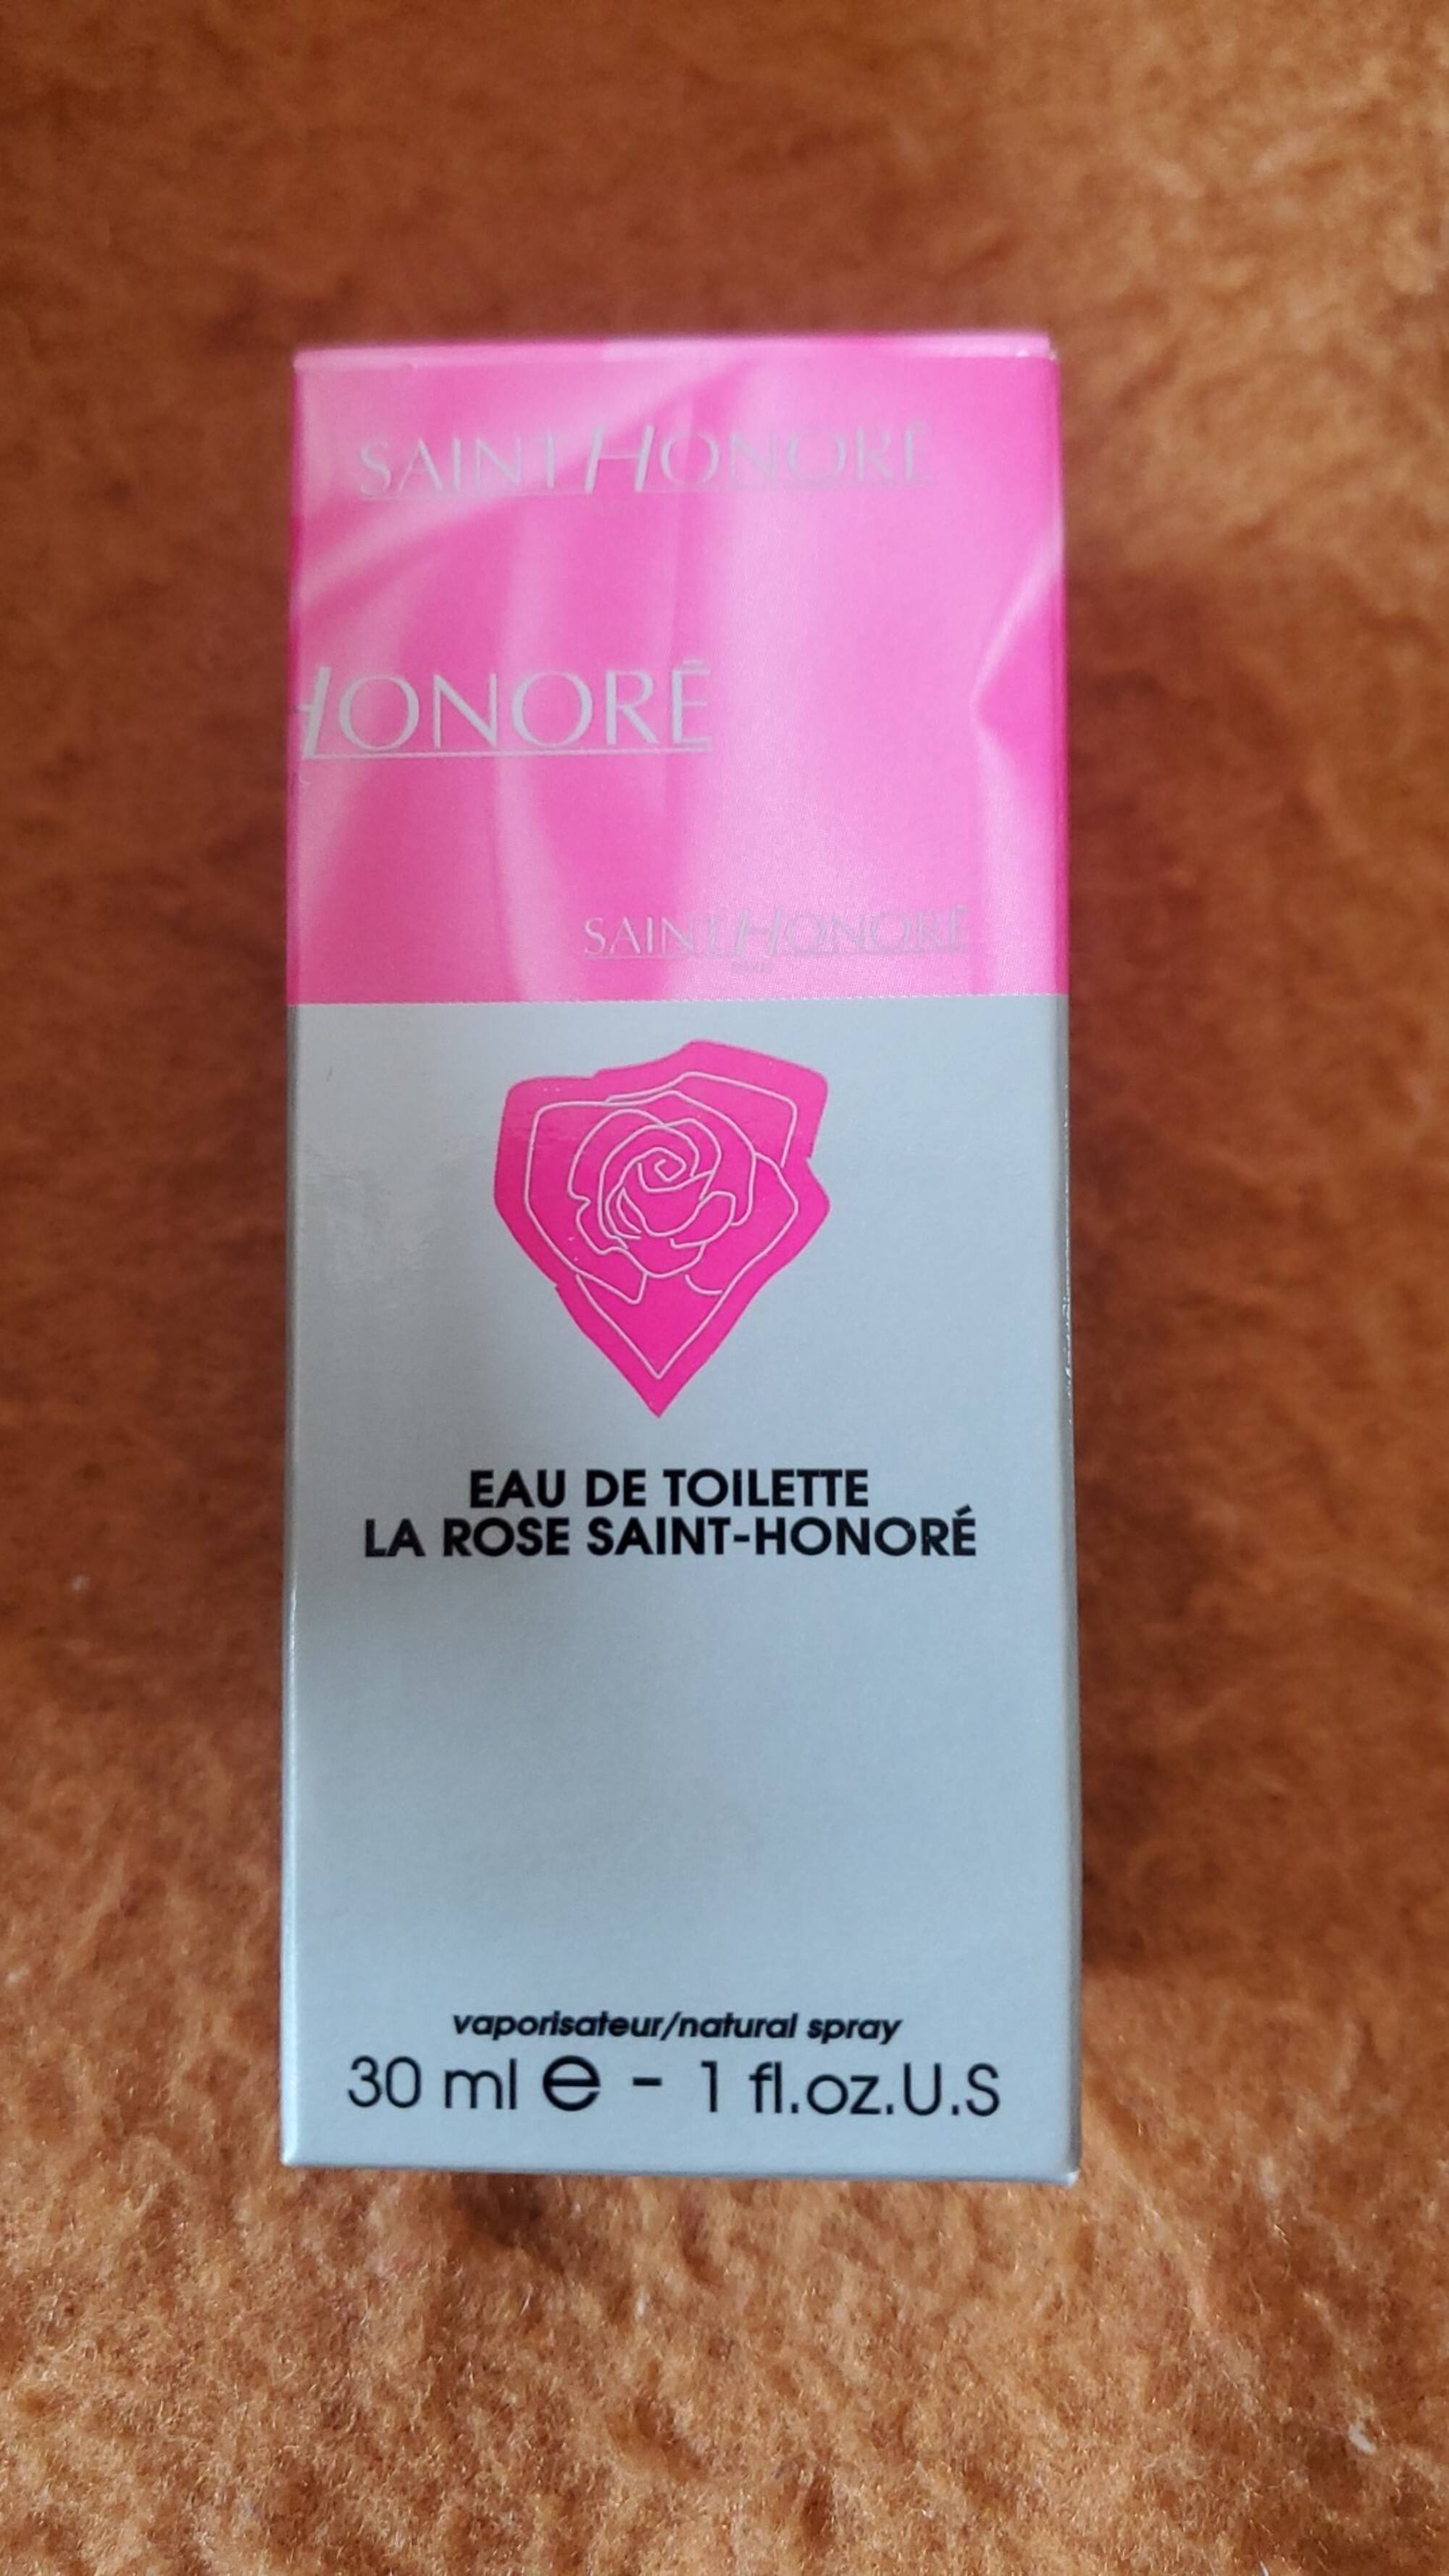 SAINT HONORÉ - La rose saint-honoré - Eau de toilette